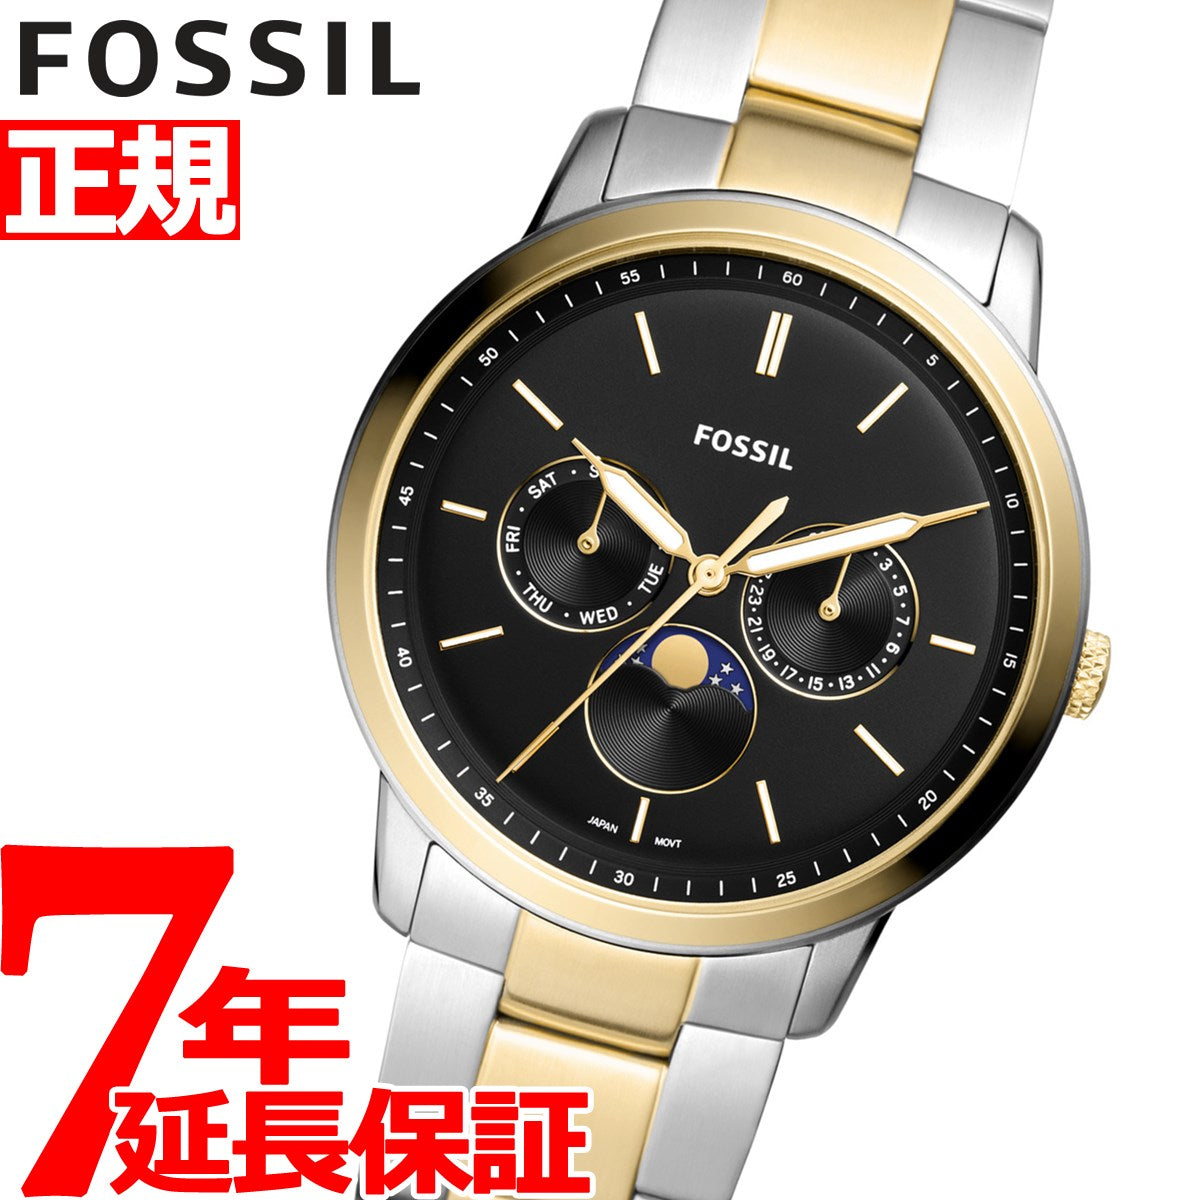 Fossil メンズ 時計ゴールド ブラック200-5ミリメートル - 時計